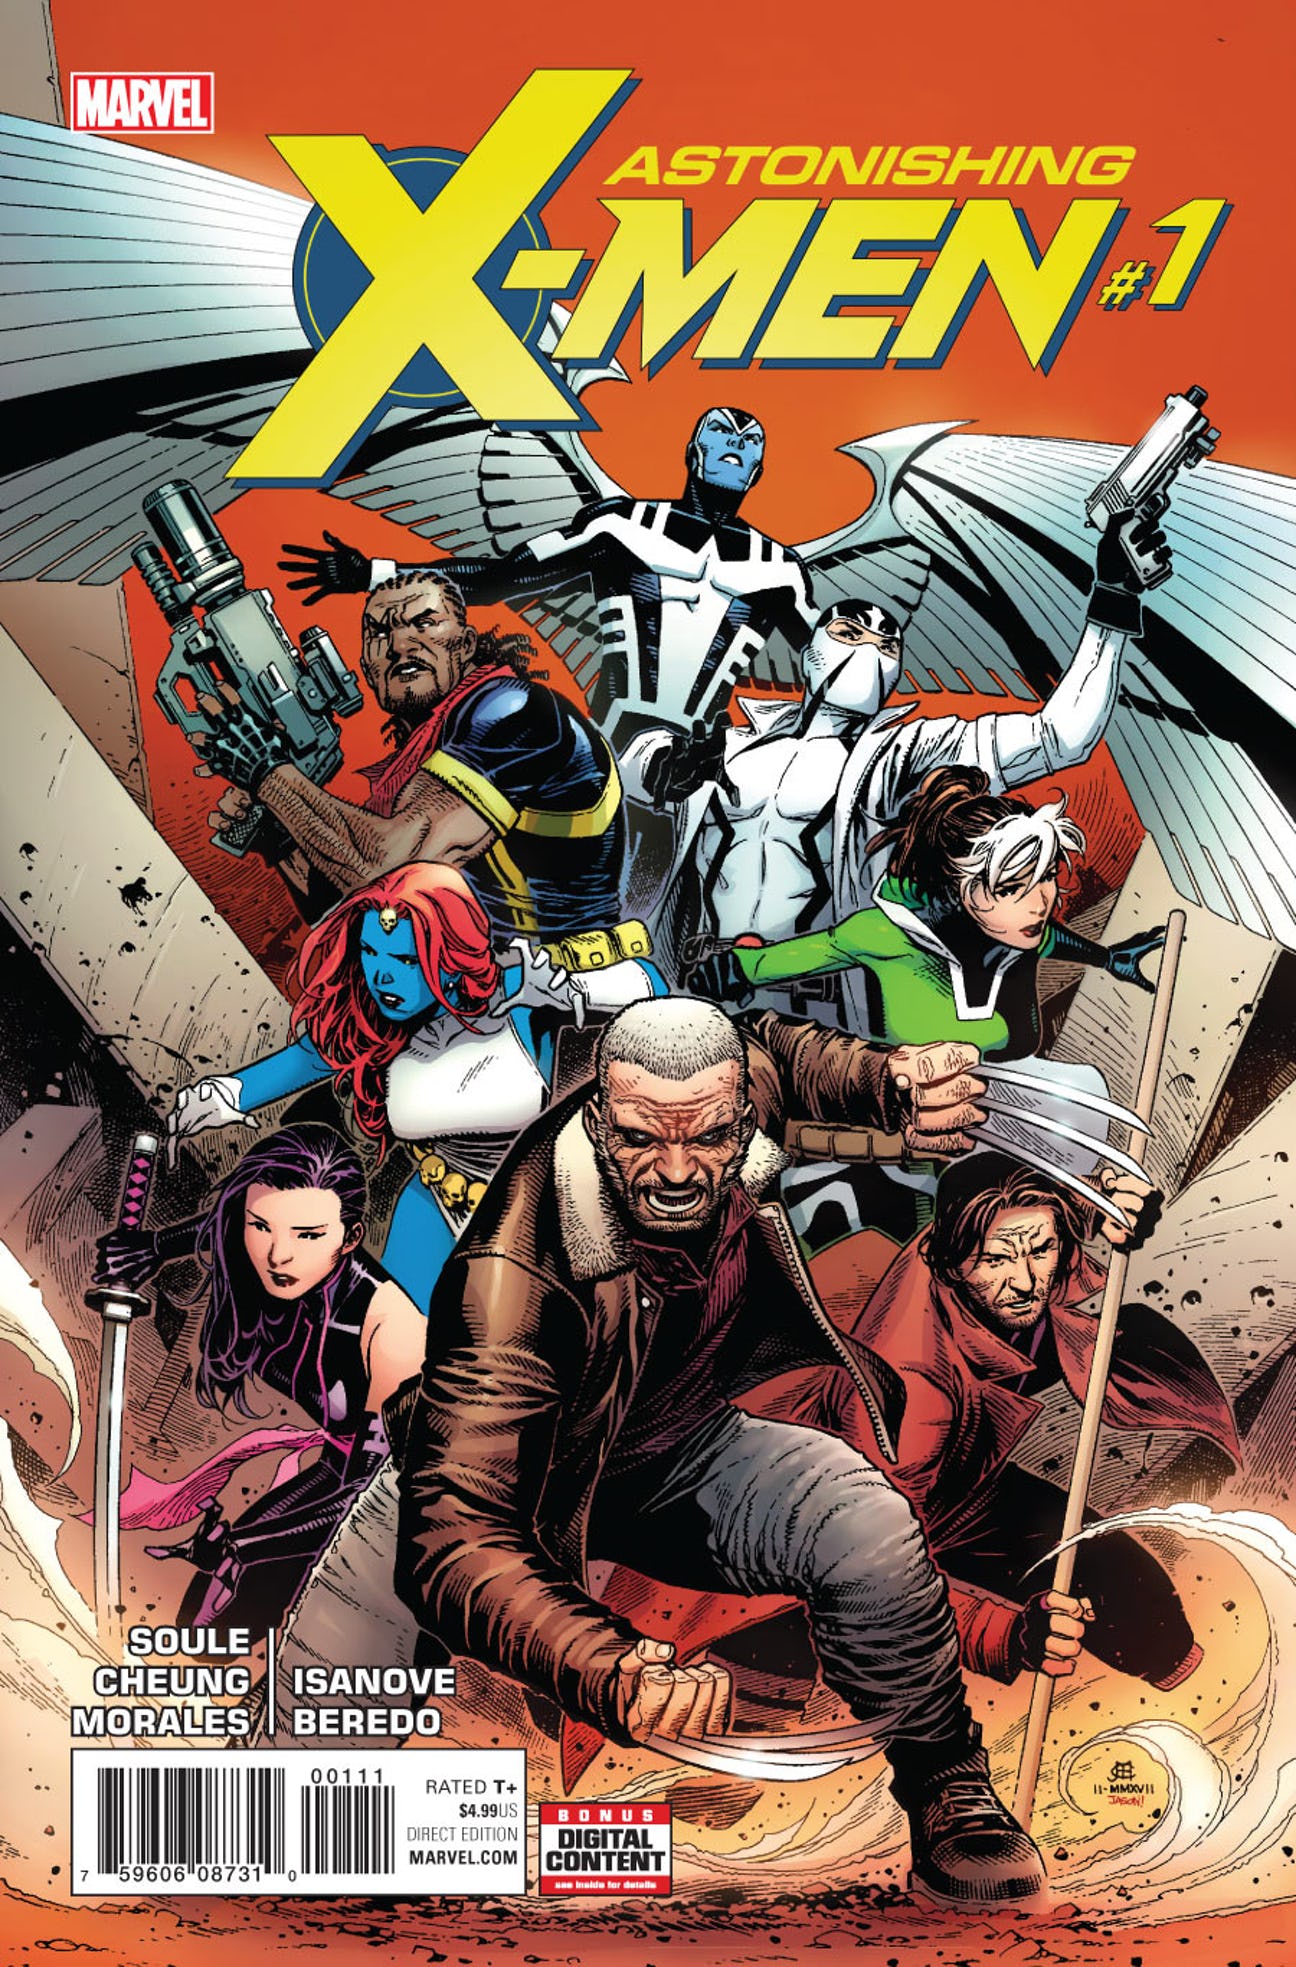 Astonishing X-Men Vol 4 1